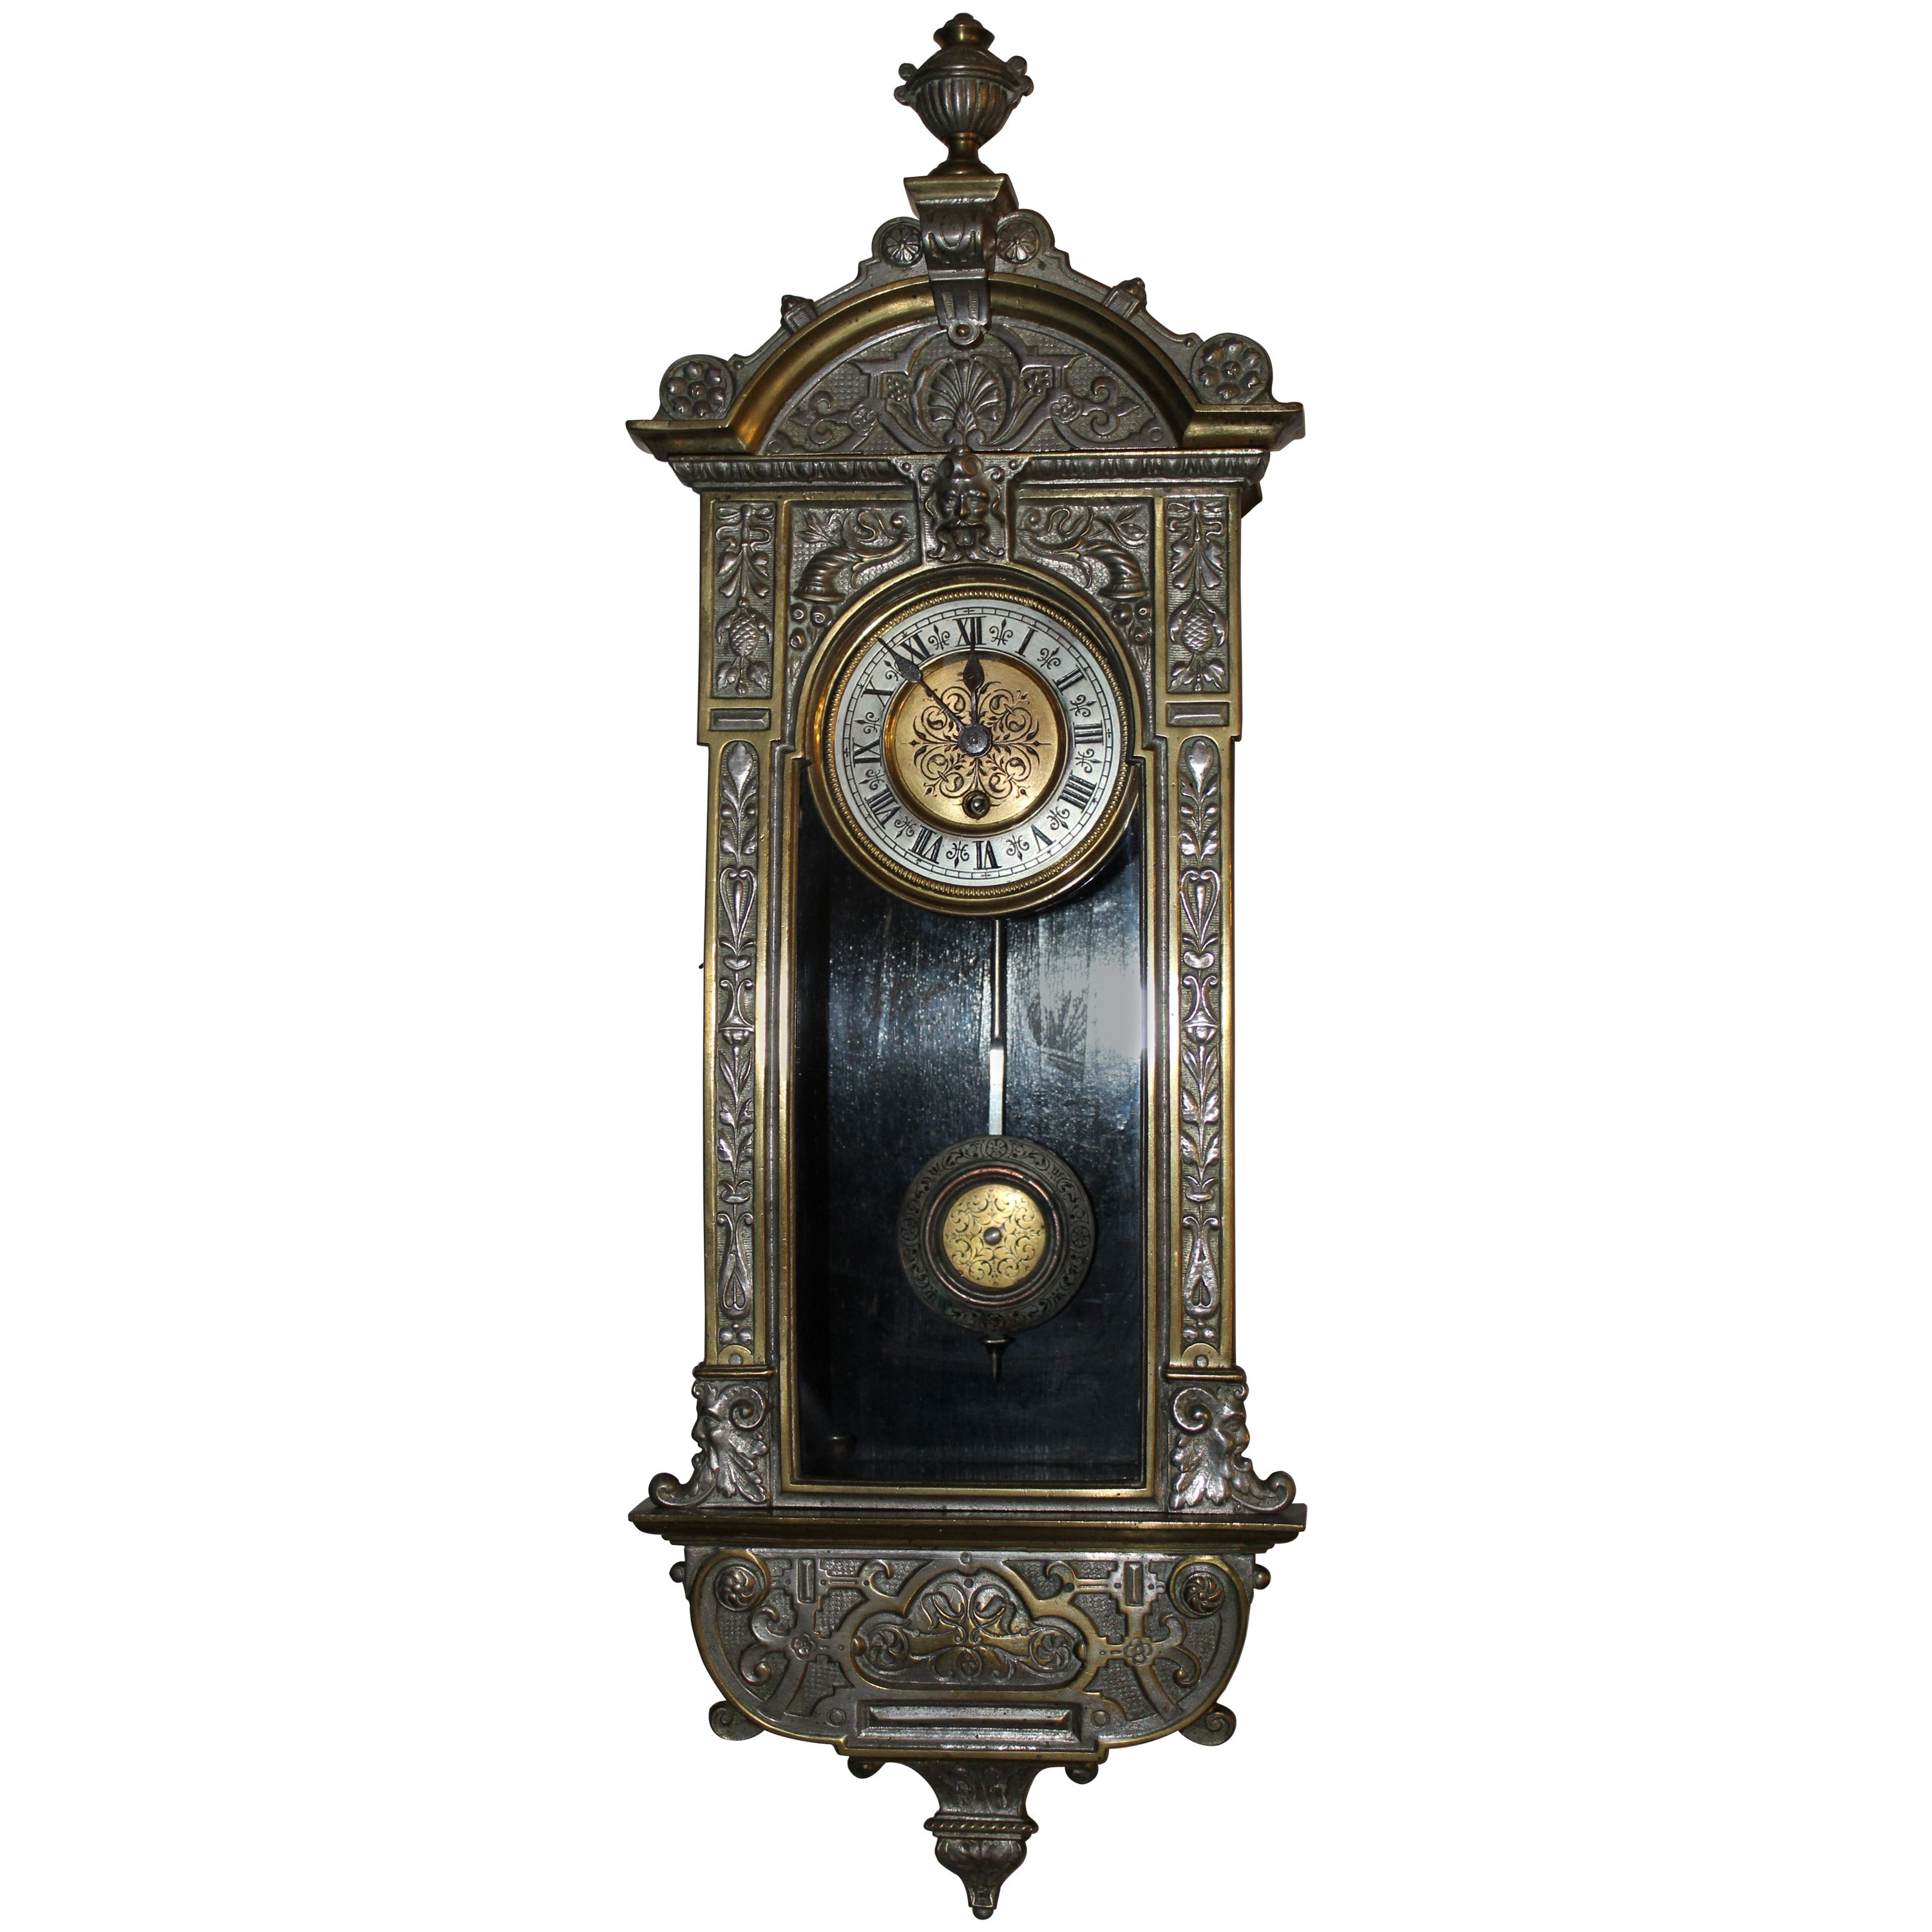 Rudolf Mayer Clock, 19th Century, German, Vienna